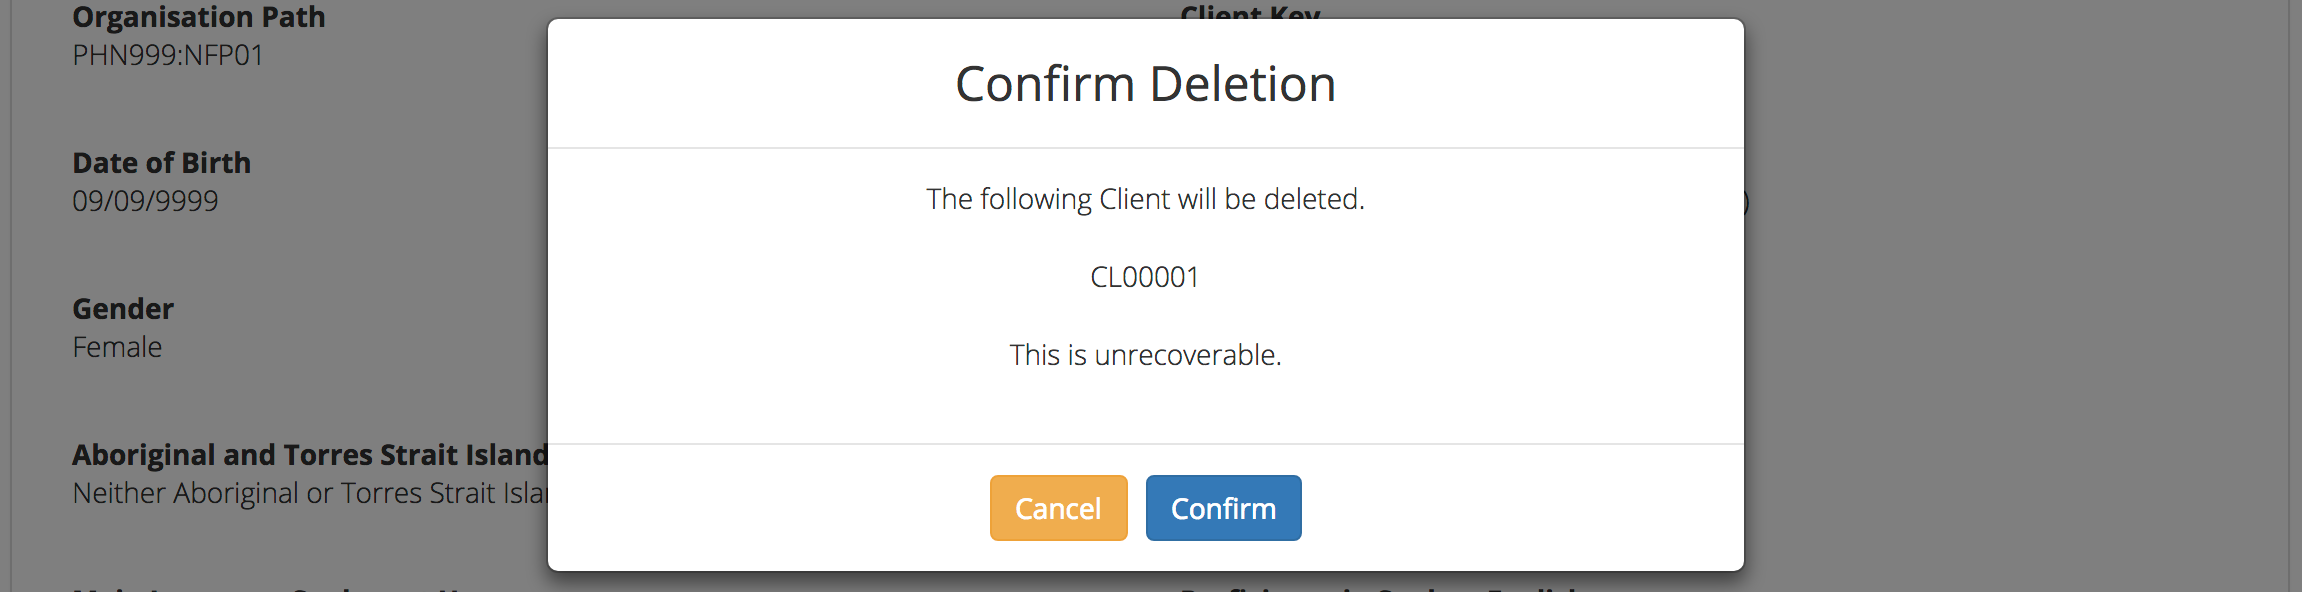 Client Data Confirm Delete